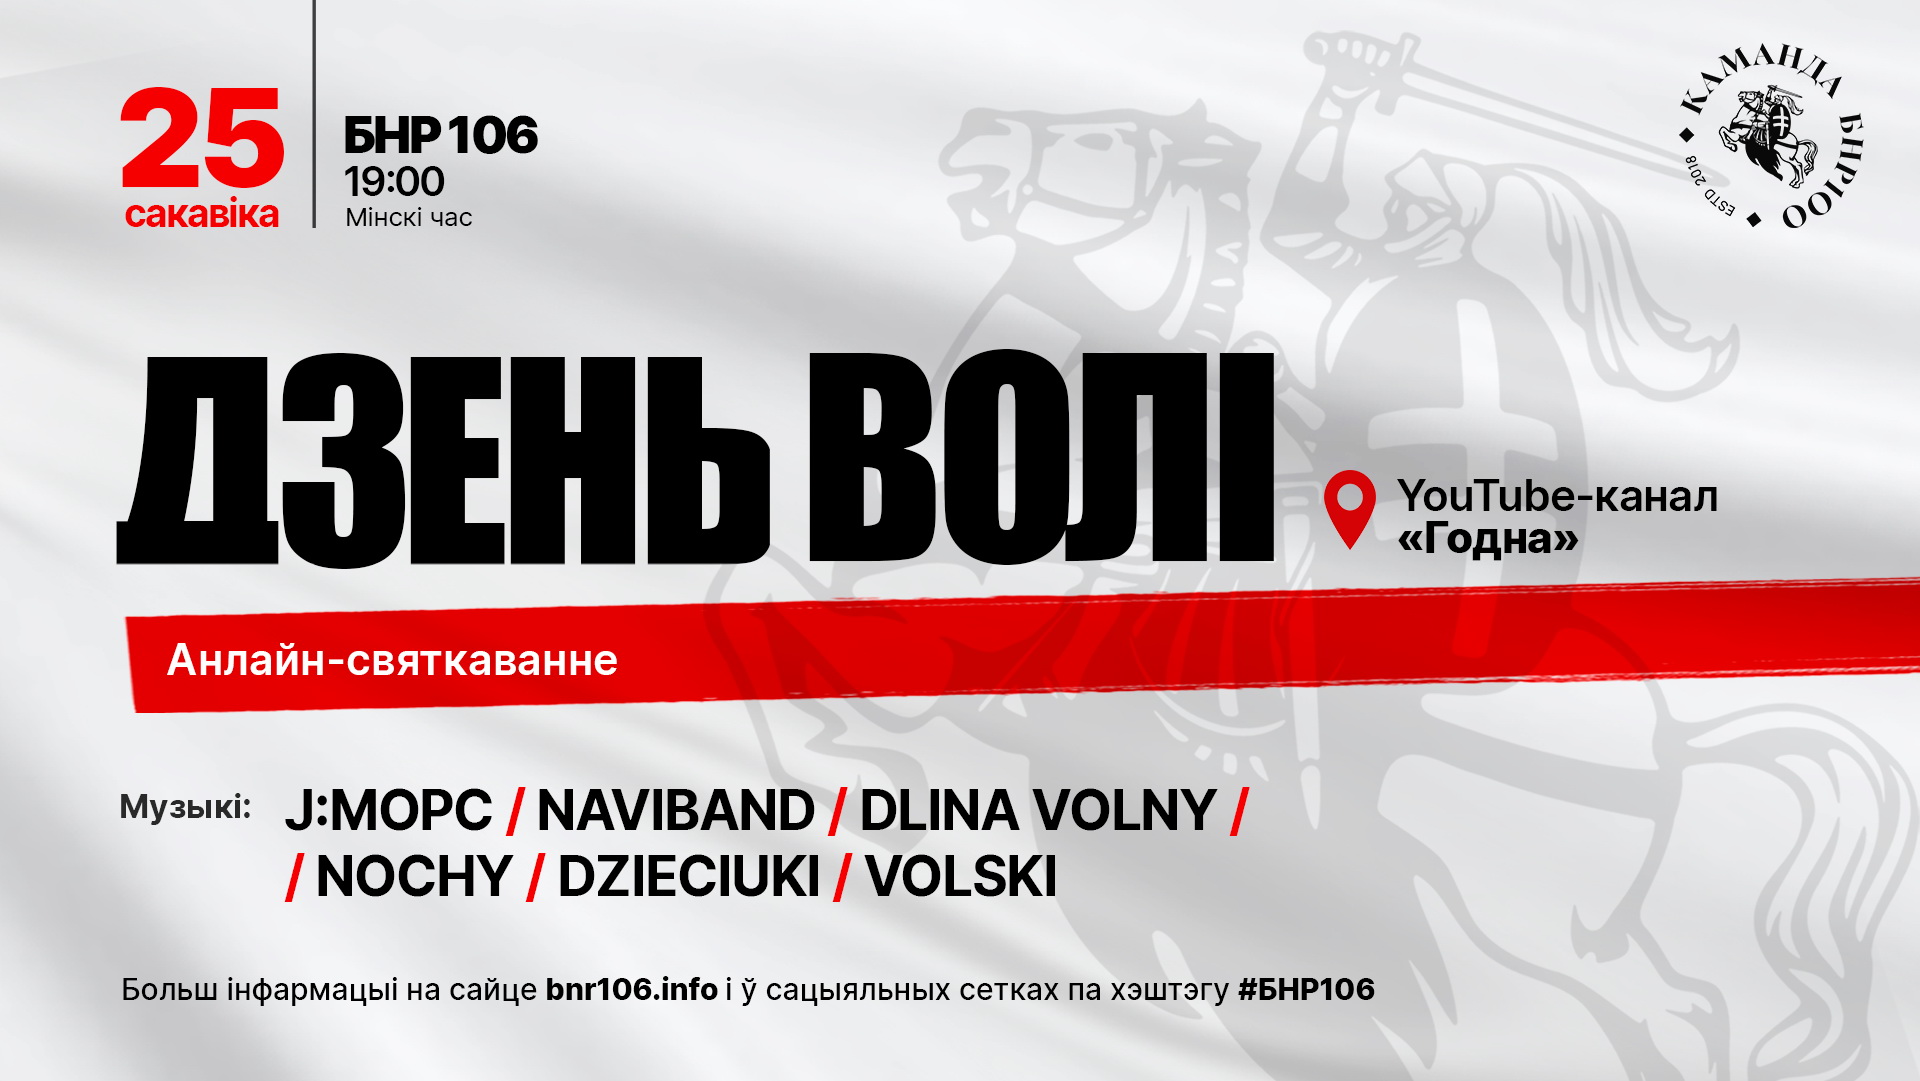 Названы группы, которые выступят на онлайн-праздновании 106-й годовщины БНР